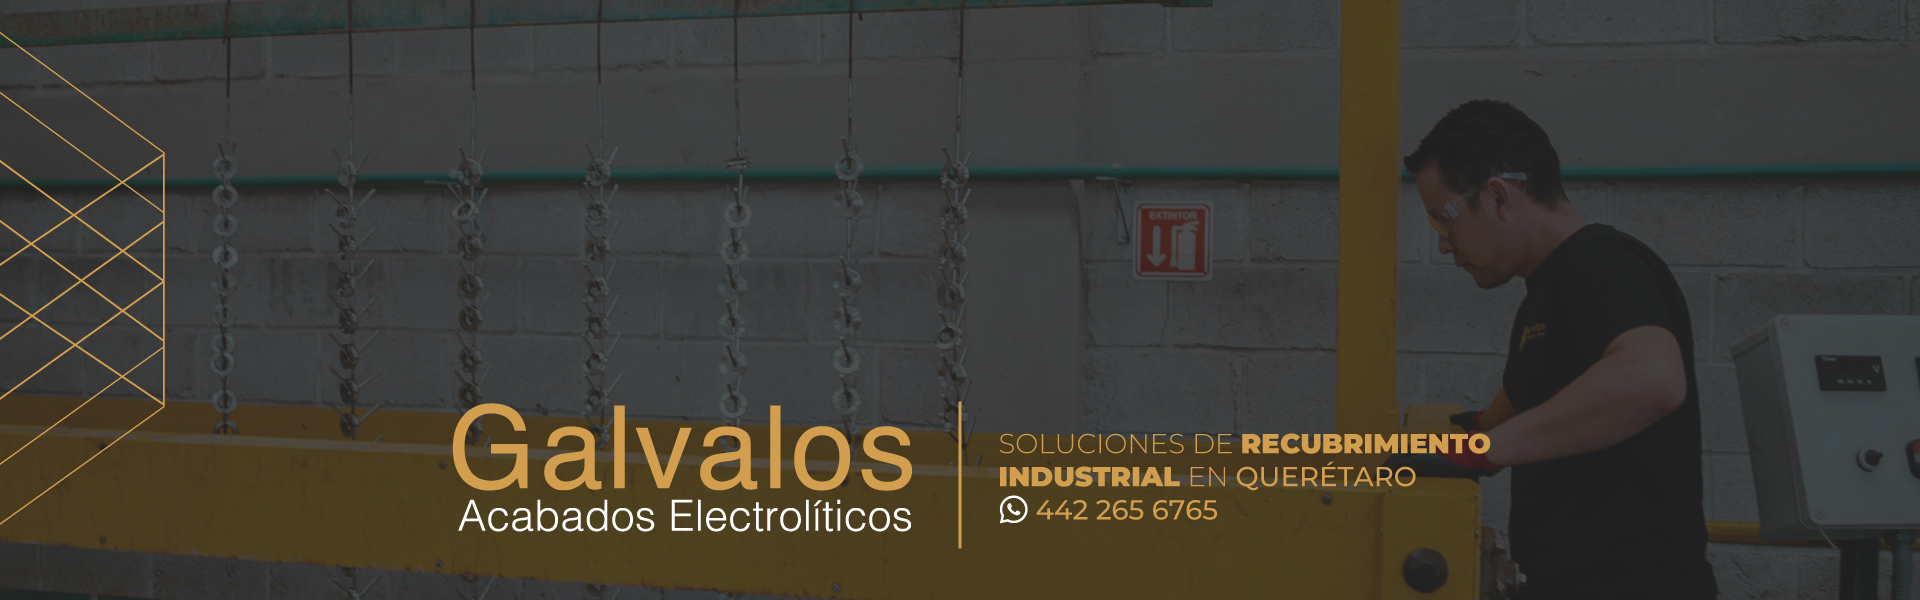 Expertos en recubrimientos metálicos en Querétaro | Gálvalos